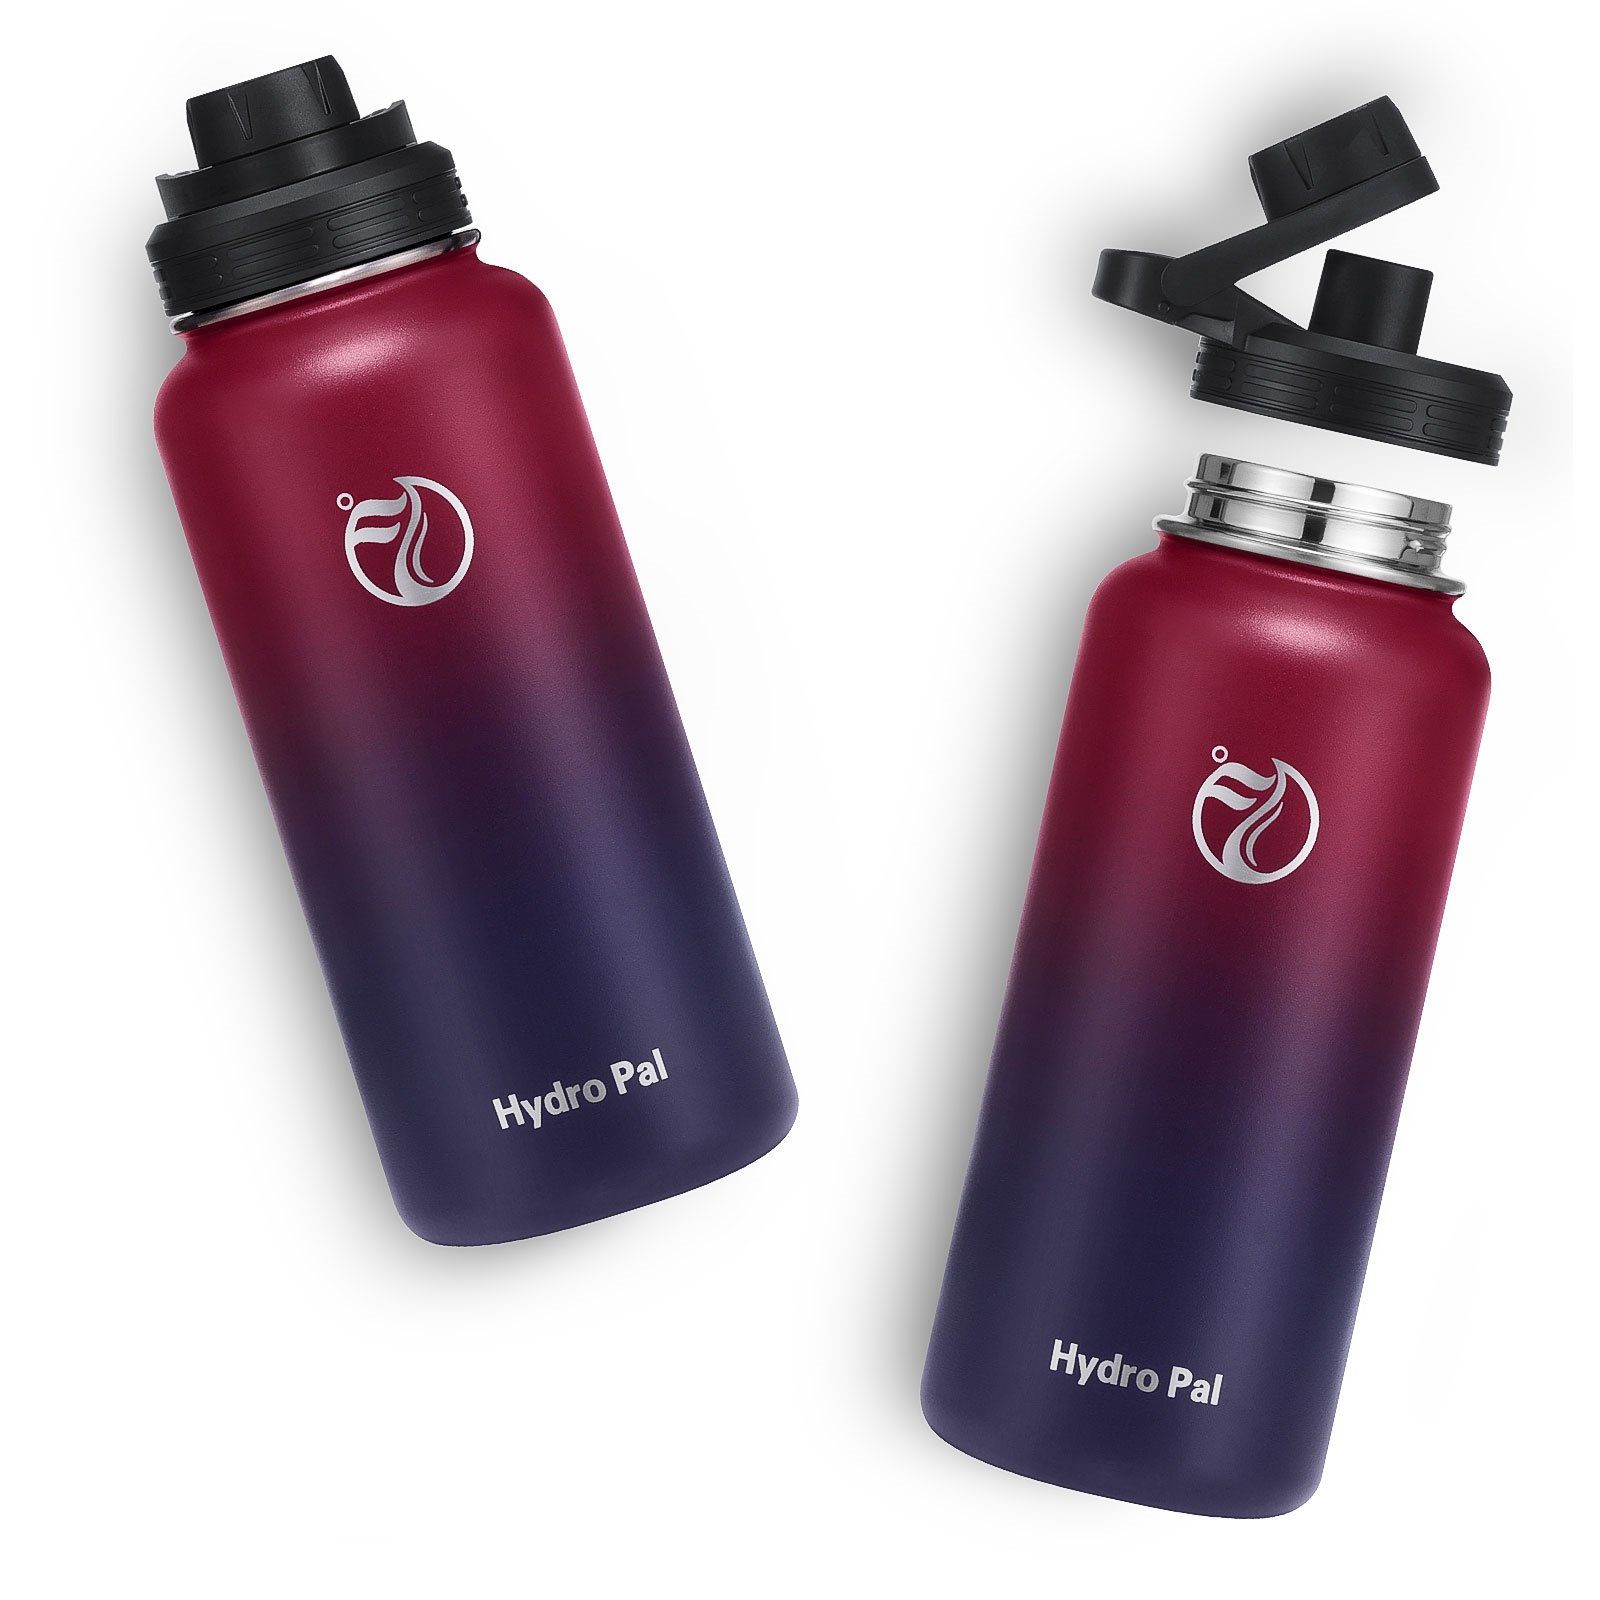 REDOM Auslaufsicher 2 Thermosflasche Edelstahl Kohlensäure BPA-Frei Isolierflasche Isolierte Deckel Strohhalm 946ml, Wasserflasche Rot/Lila Trinkflasche geeignet 2 mit